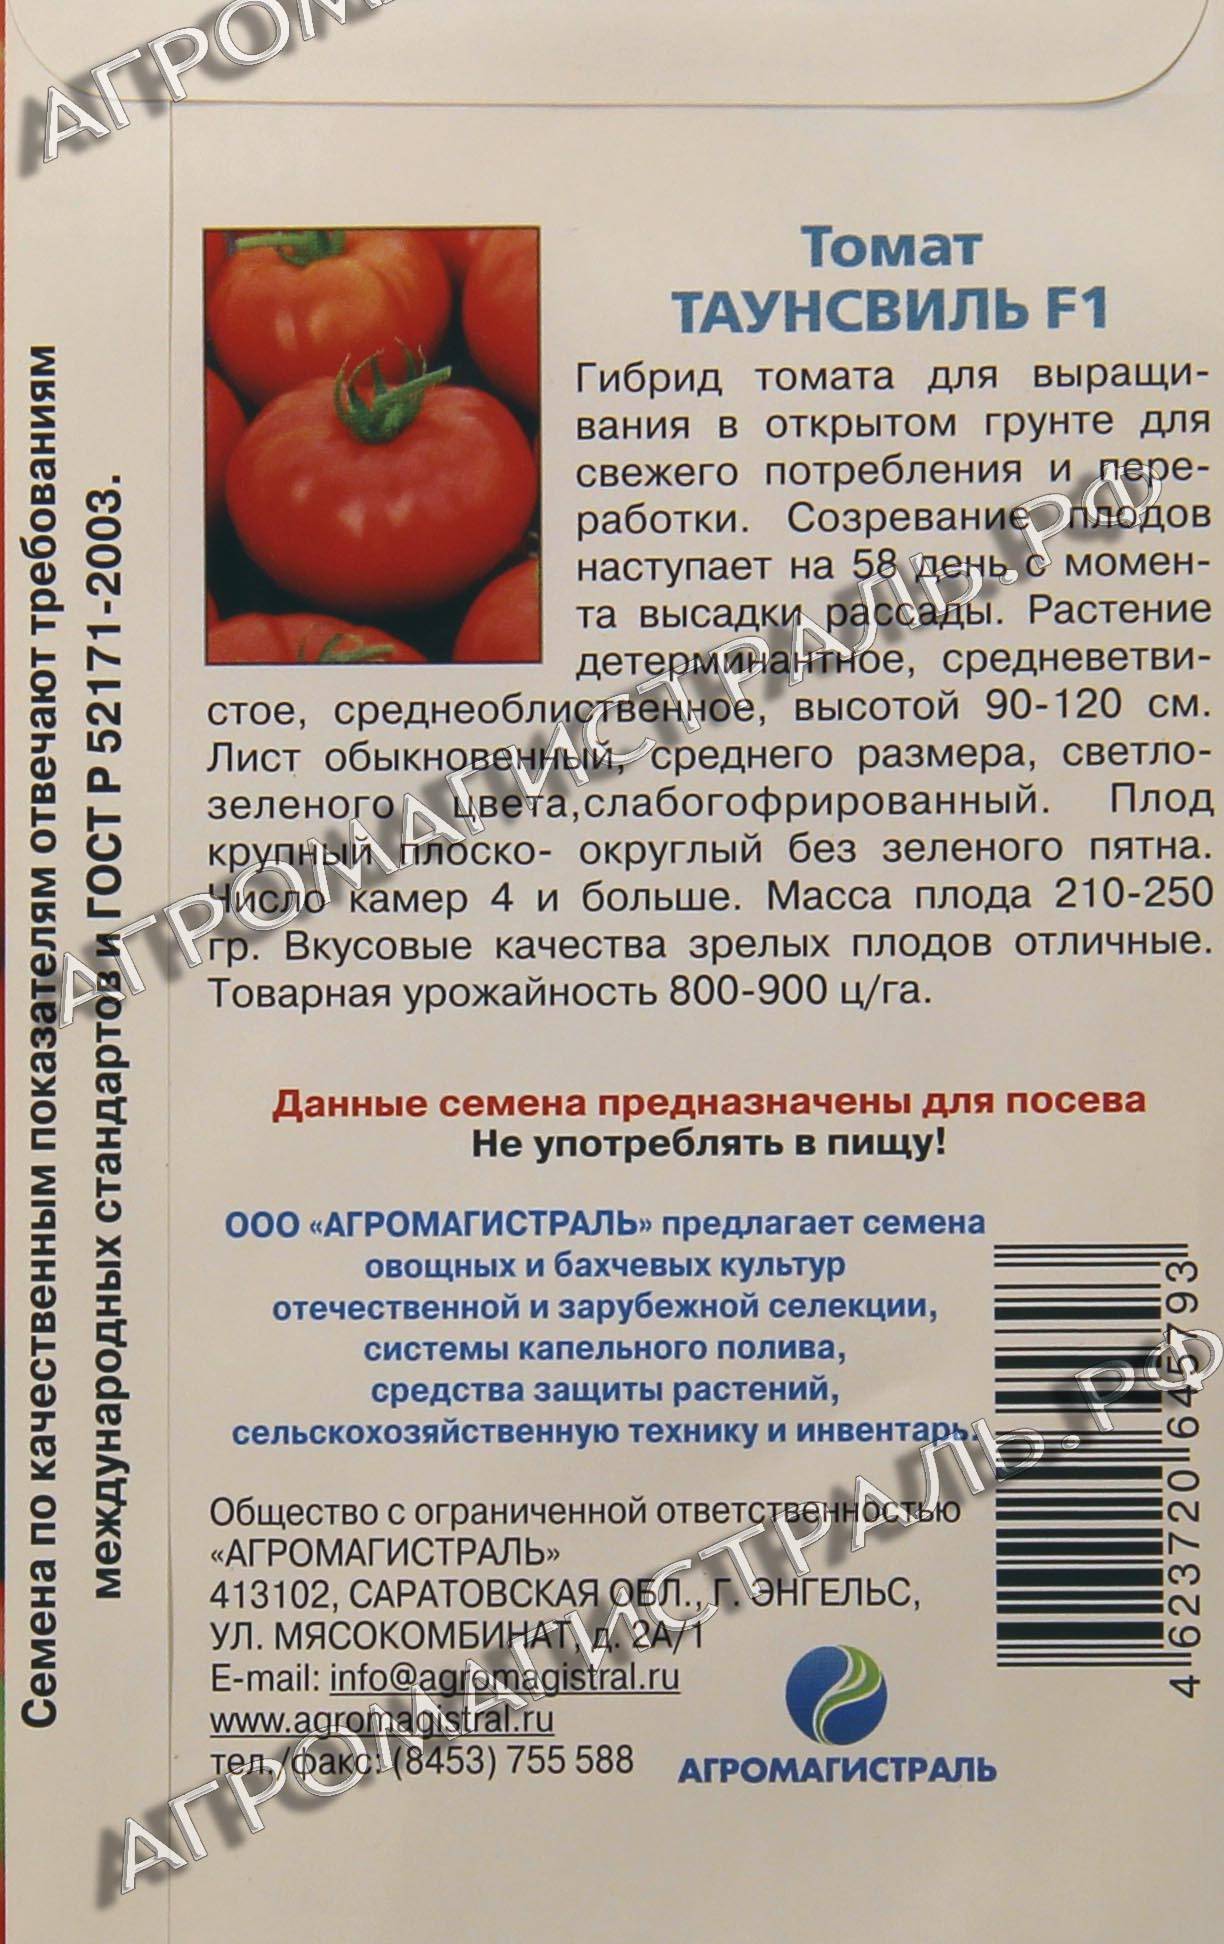 Суперранние сорта томатов для открытого грунта и для теплиц: обзор лучших, их описание, фото полученных плодов и отзывы дачников